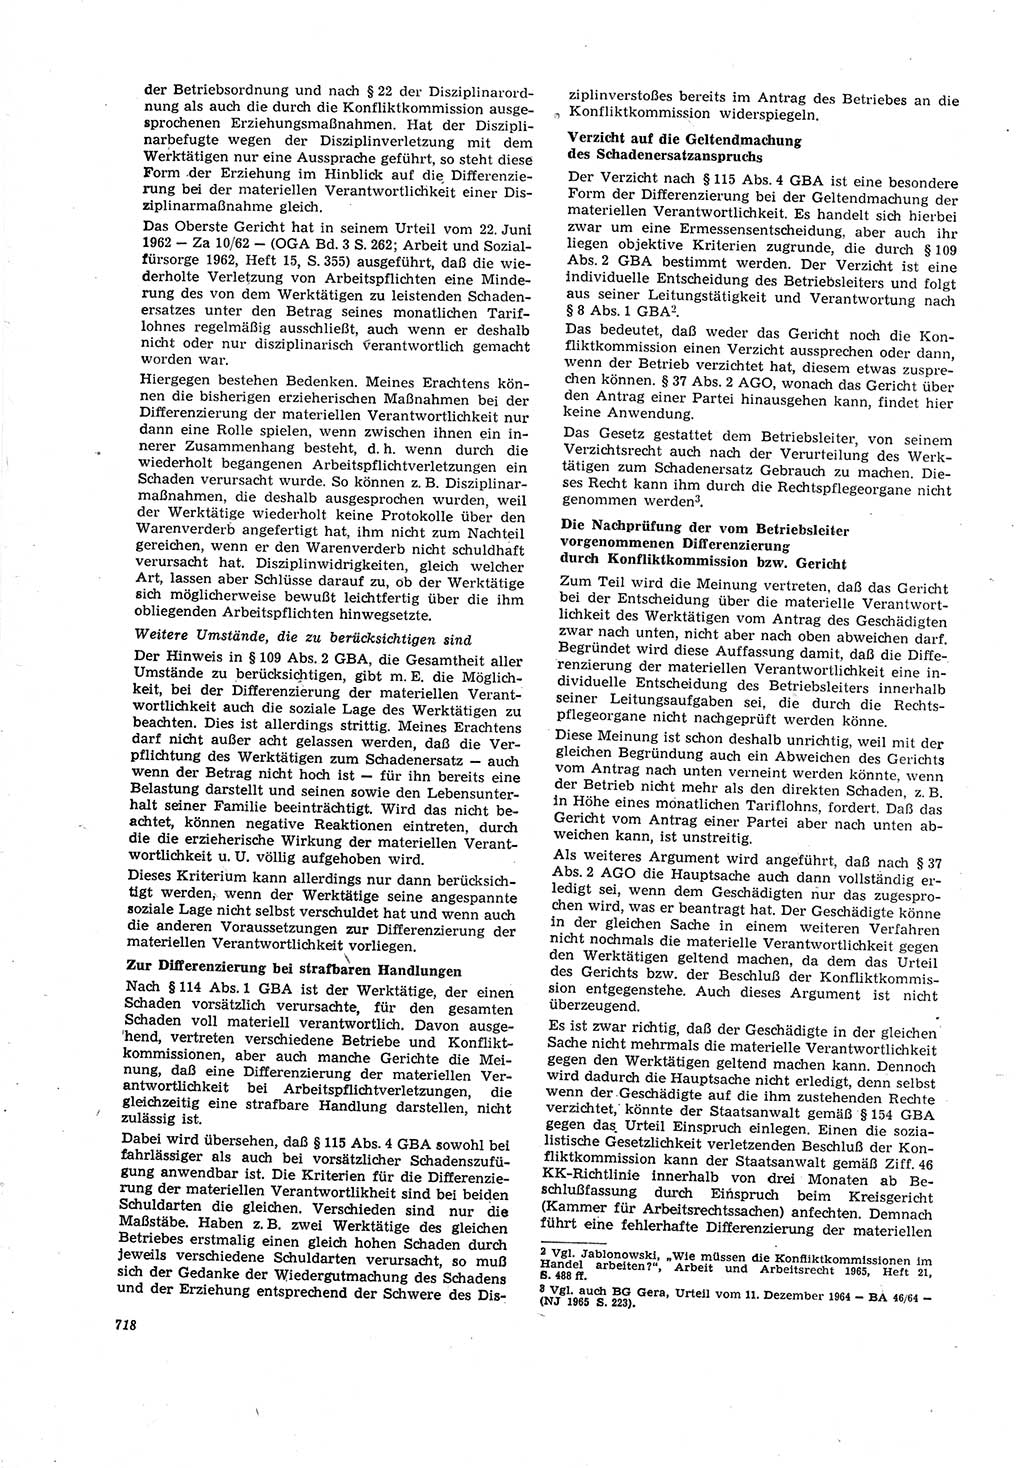 Neue Justiz (NJ), Zeitschrift für Recht und Rechtswissenschaft [Deutsche Demokratische Republik (DDR)], 20. Jahrgang 1966, Seite 718 (NJ DDR 1966, S. 718)